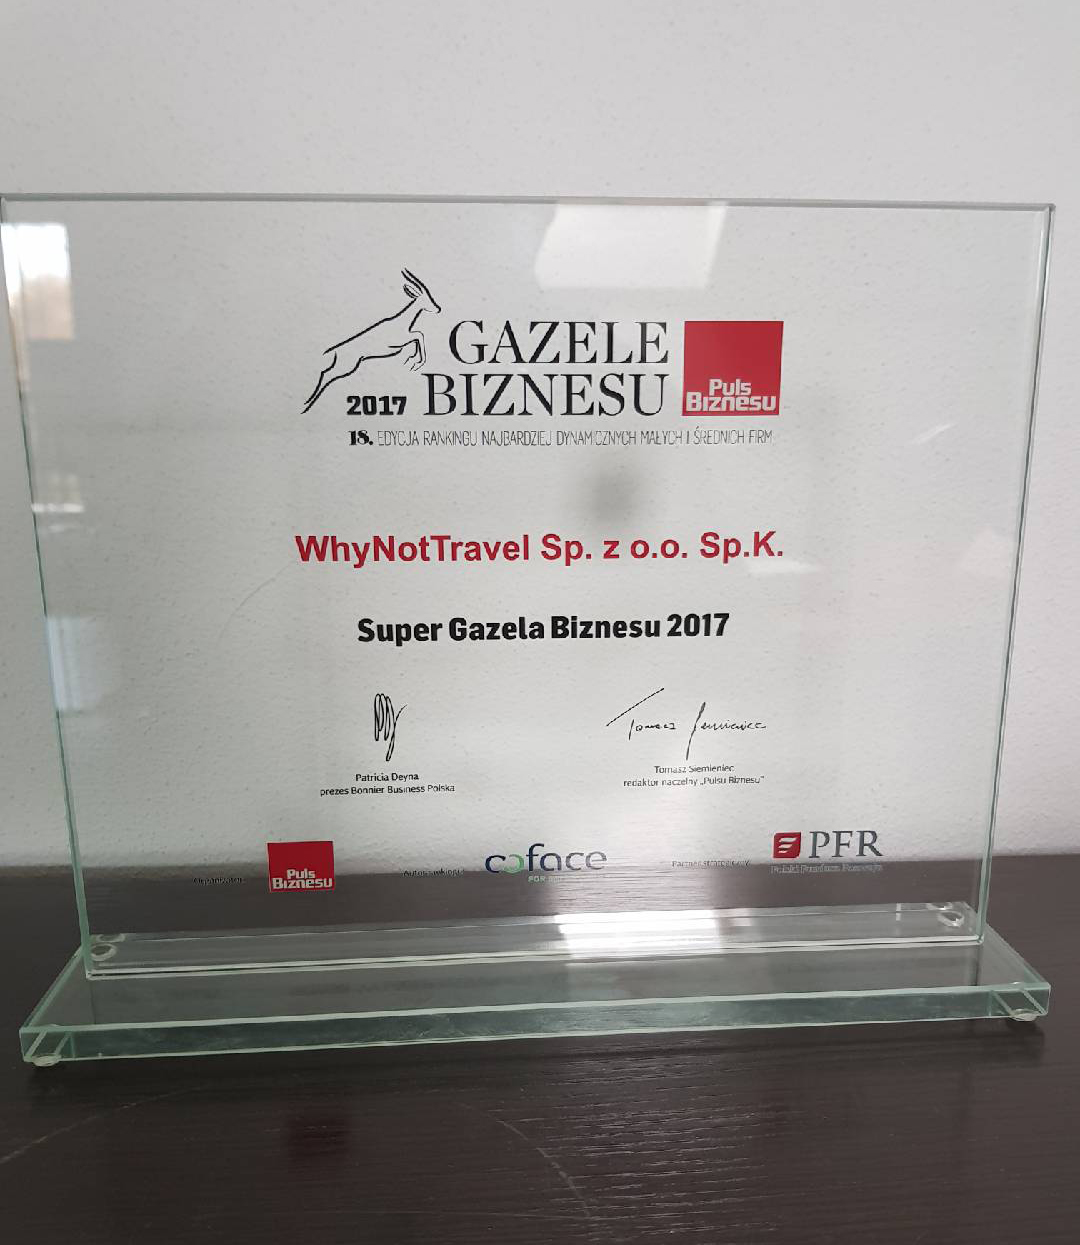 Super Gazela Biznesu 2017